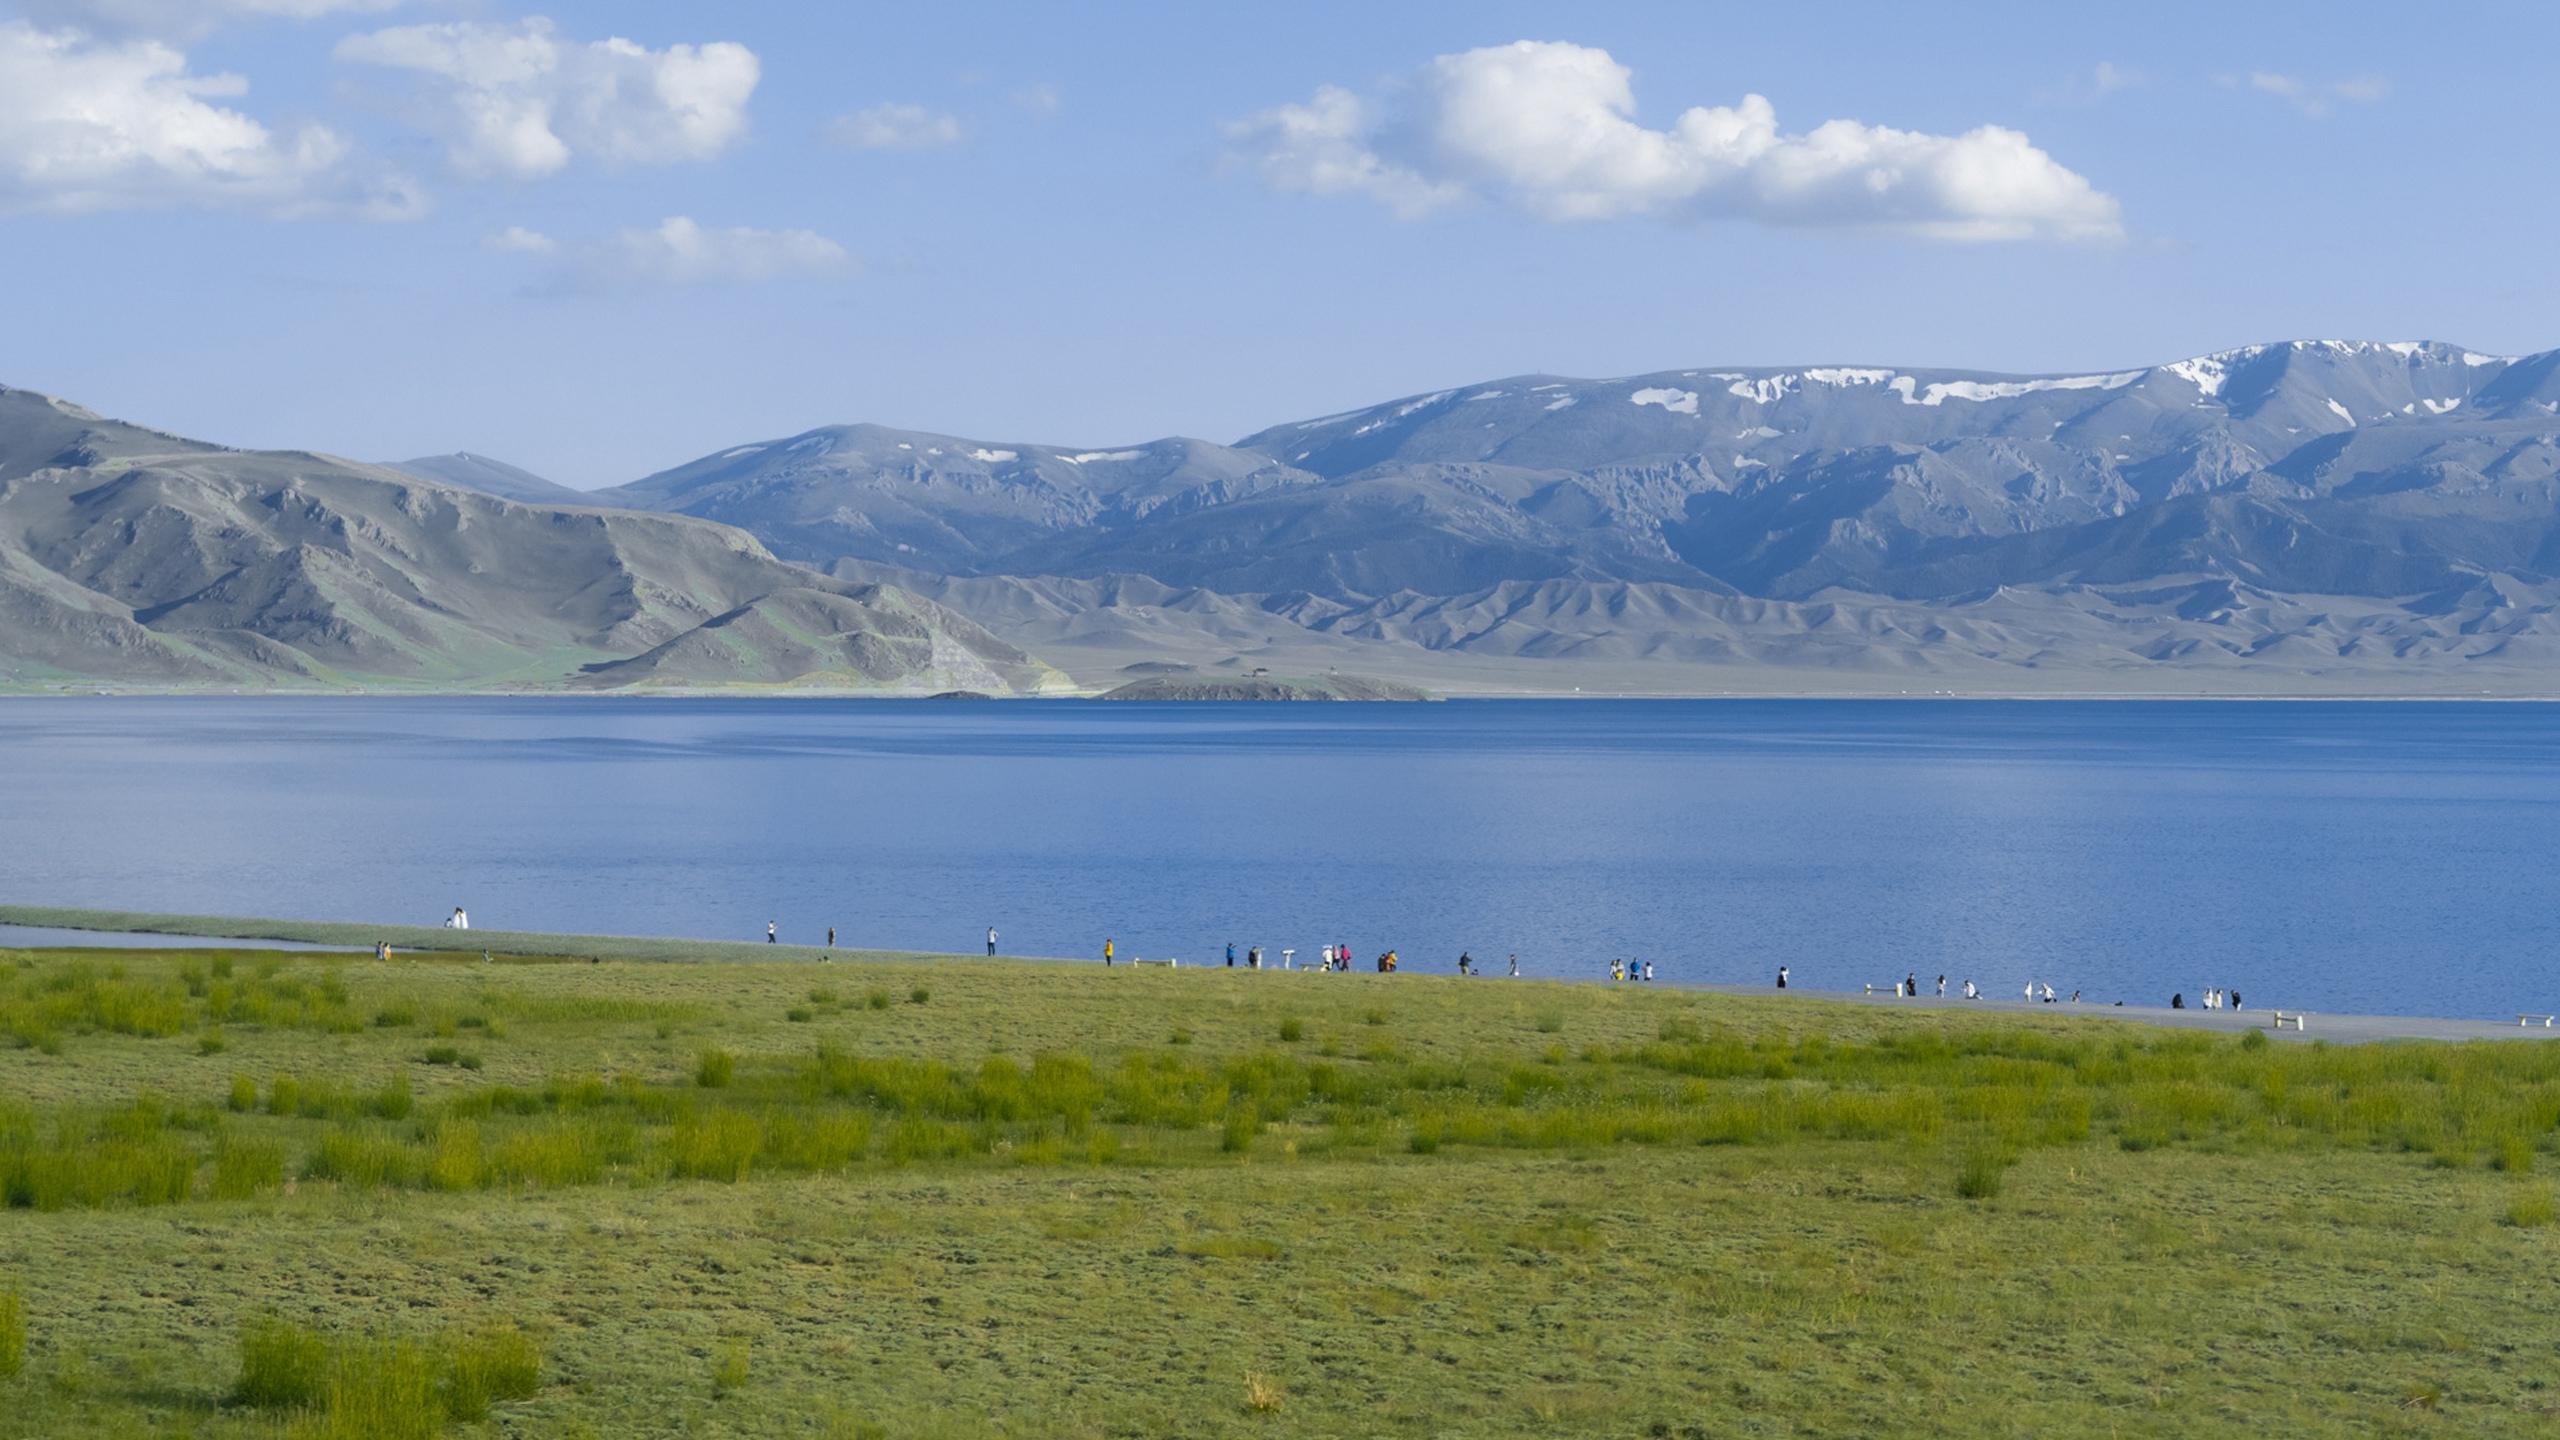 【携程攻略】博乐赛里木湖景点,晴天的赛里木湖真是新疆的一颗美丽明珠